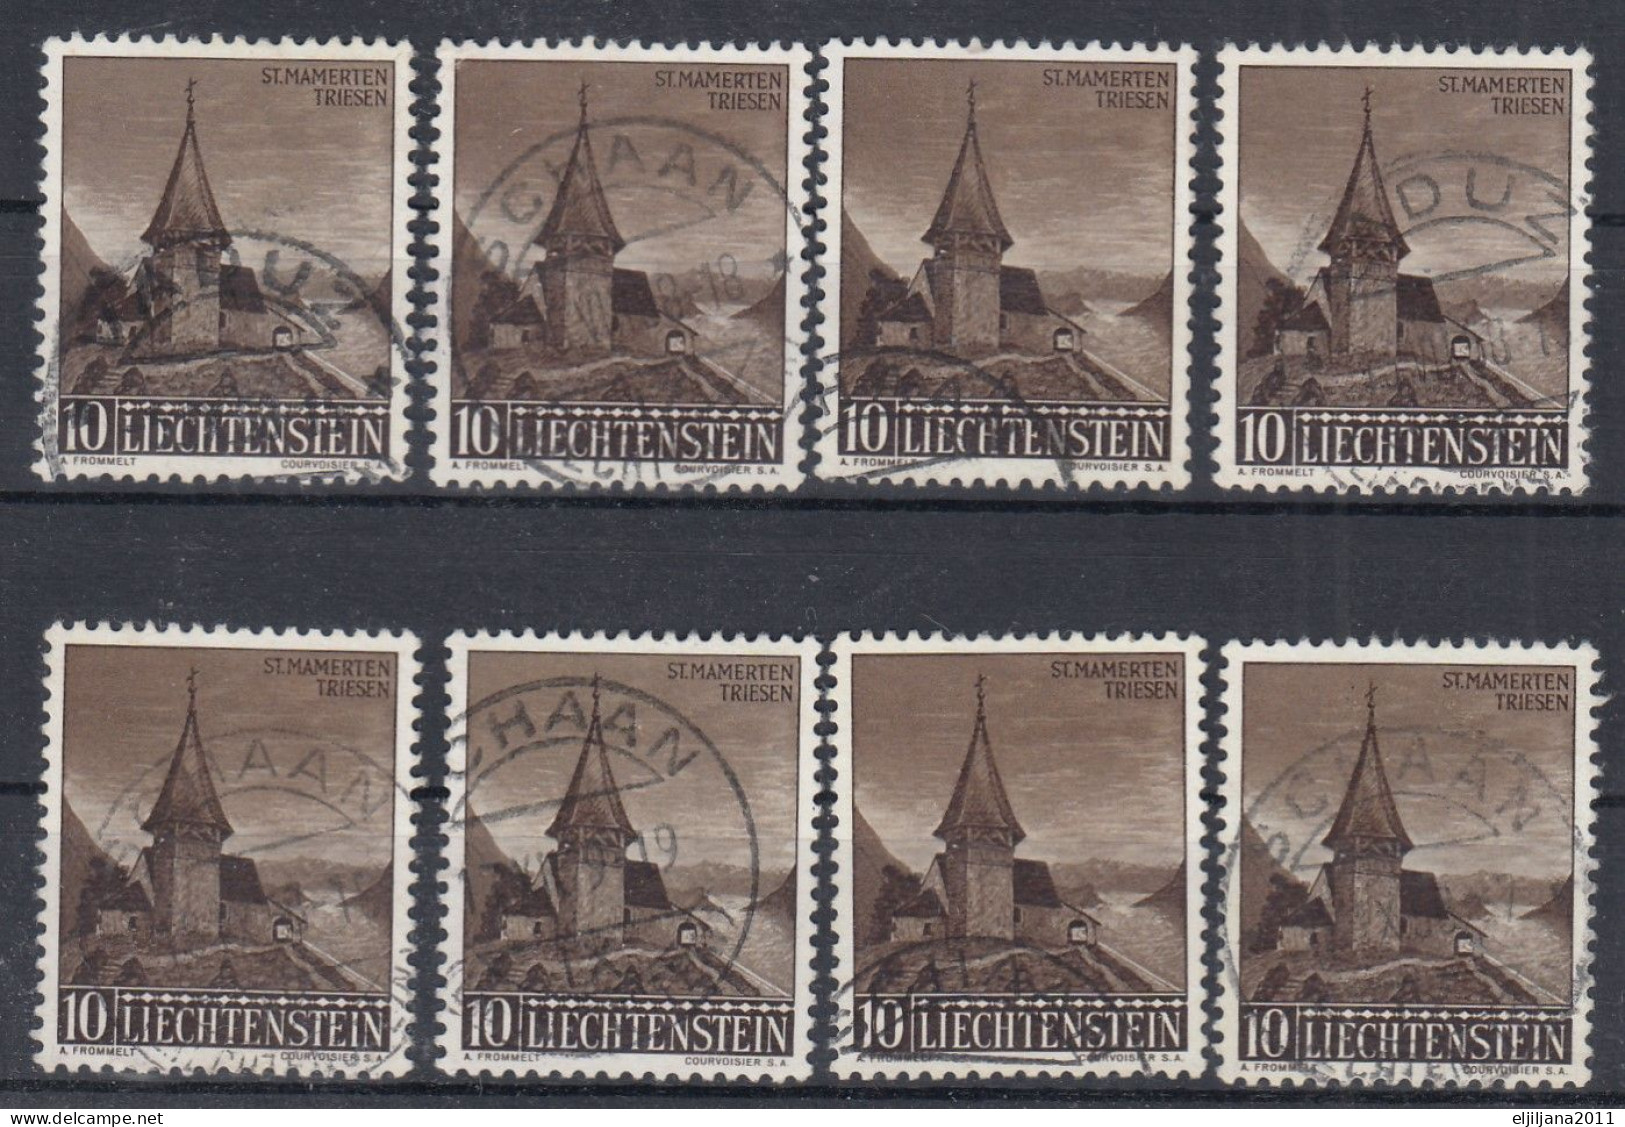 ⁕ Liechtenstein 1957 ⁕ Kapelle St. Mamerten Triesen Mi.362 ⁕ 8v Used - Gebruikt